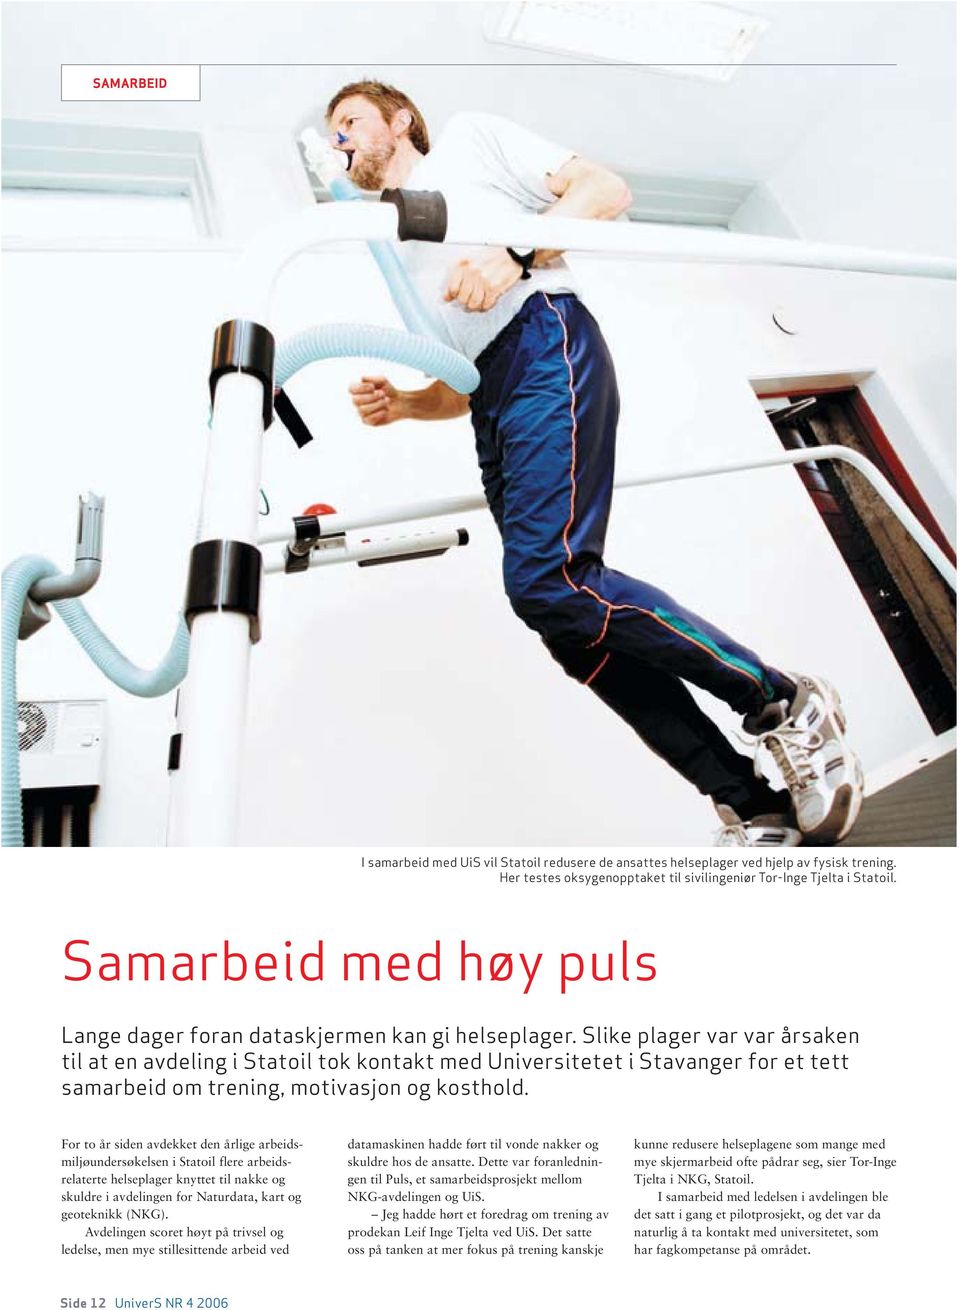 Slike plager var var årsaken til at en avdeling i Statoil tok kontakt med Universitetet i Stavanger for et tett samarbeid om trening, motivasjon og kosthold.